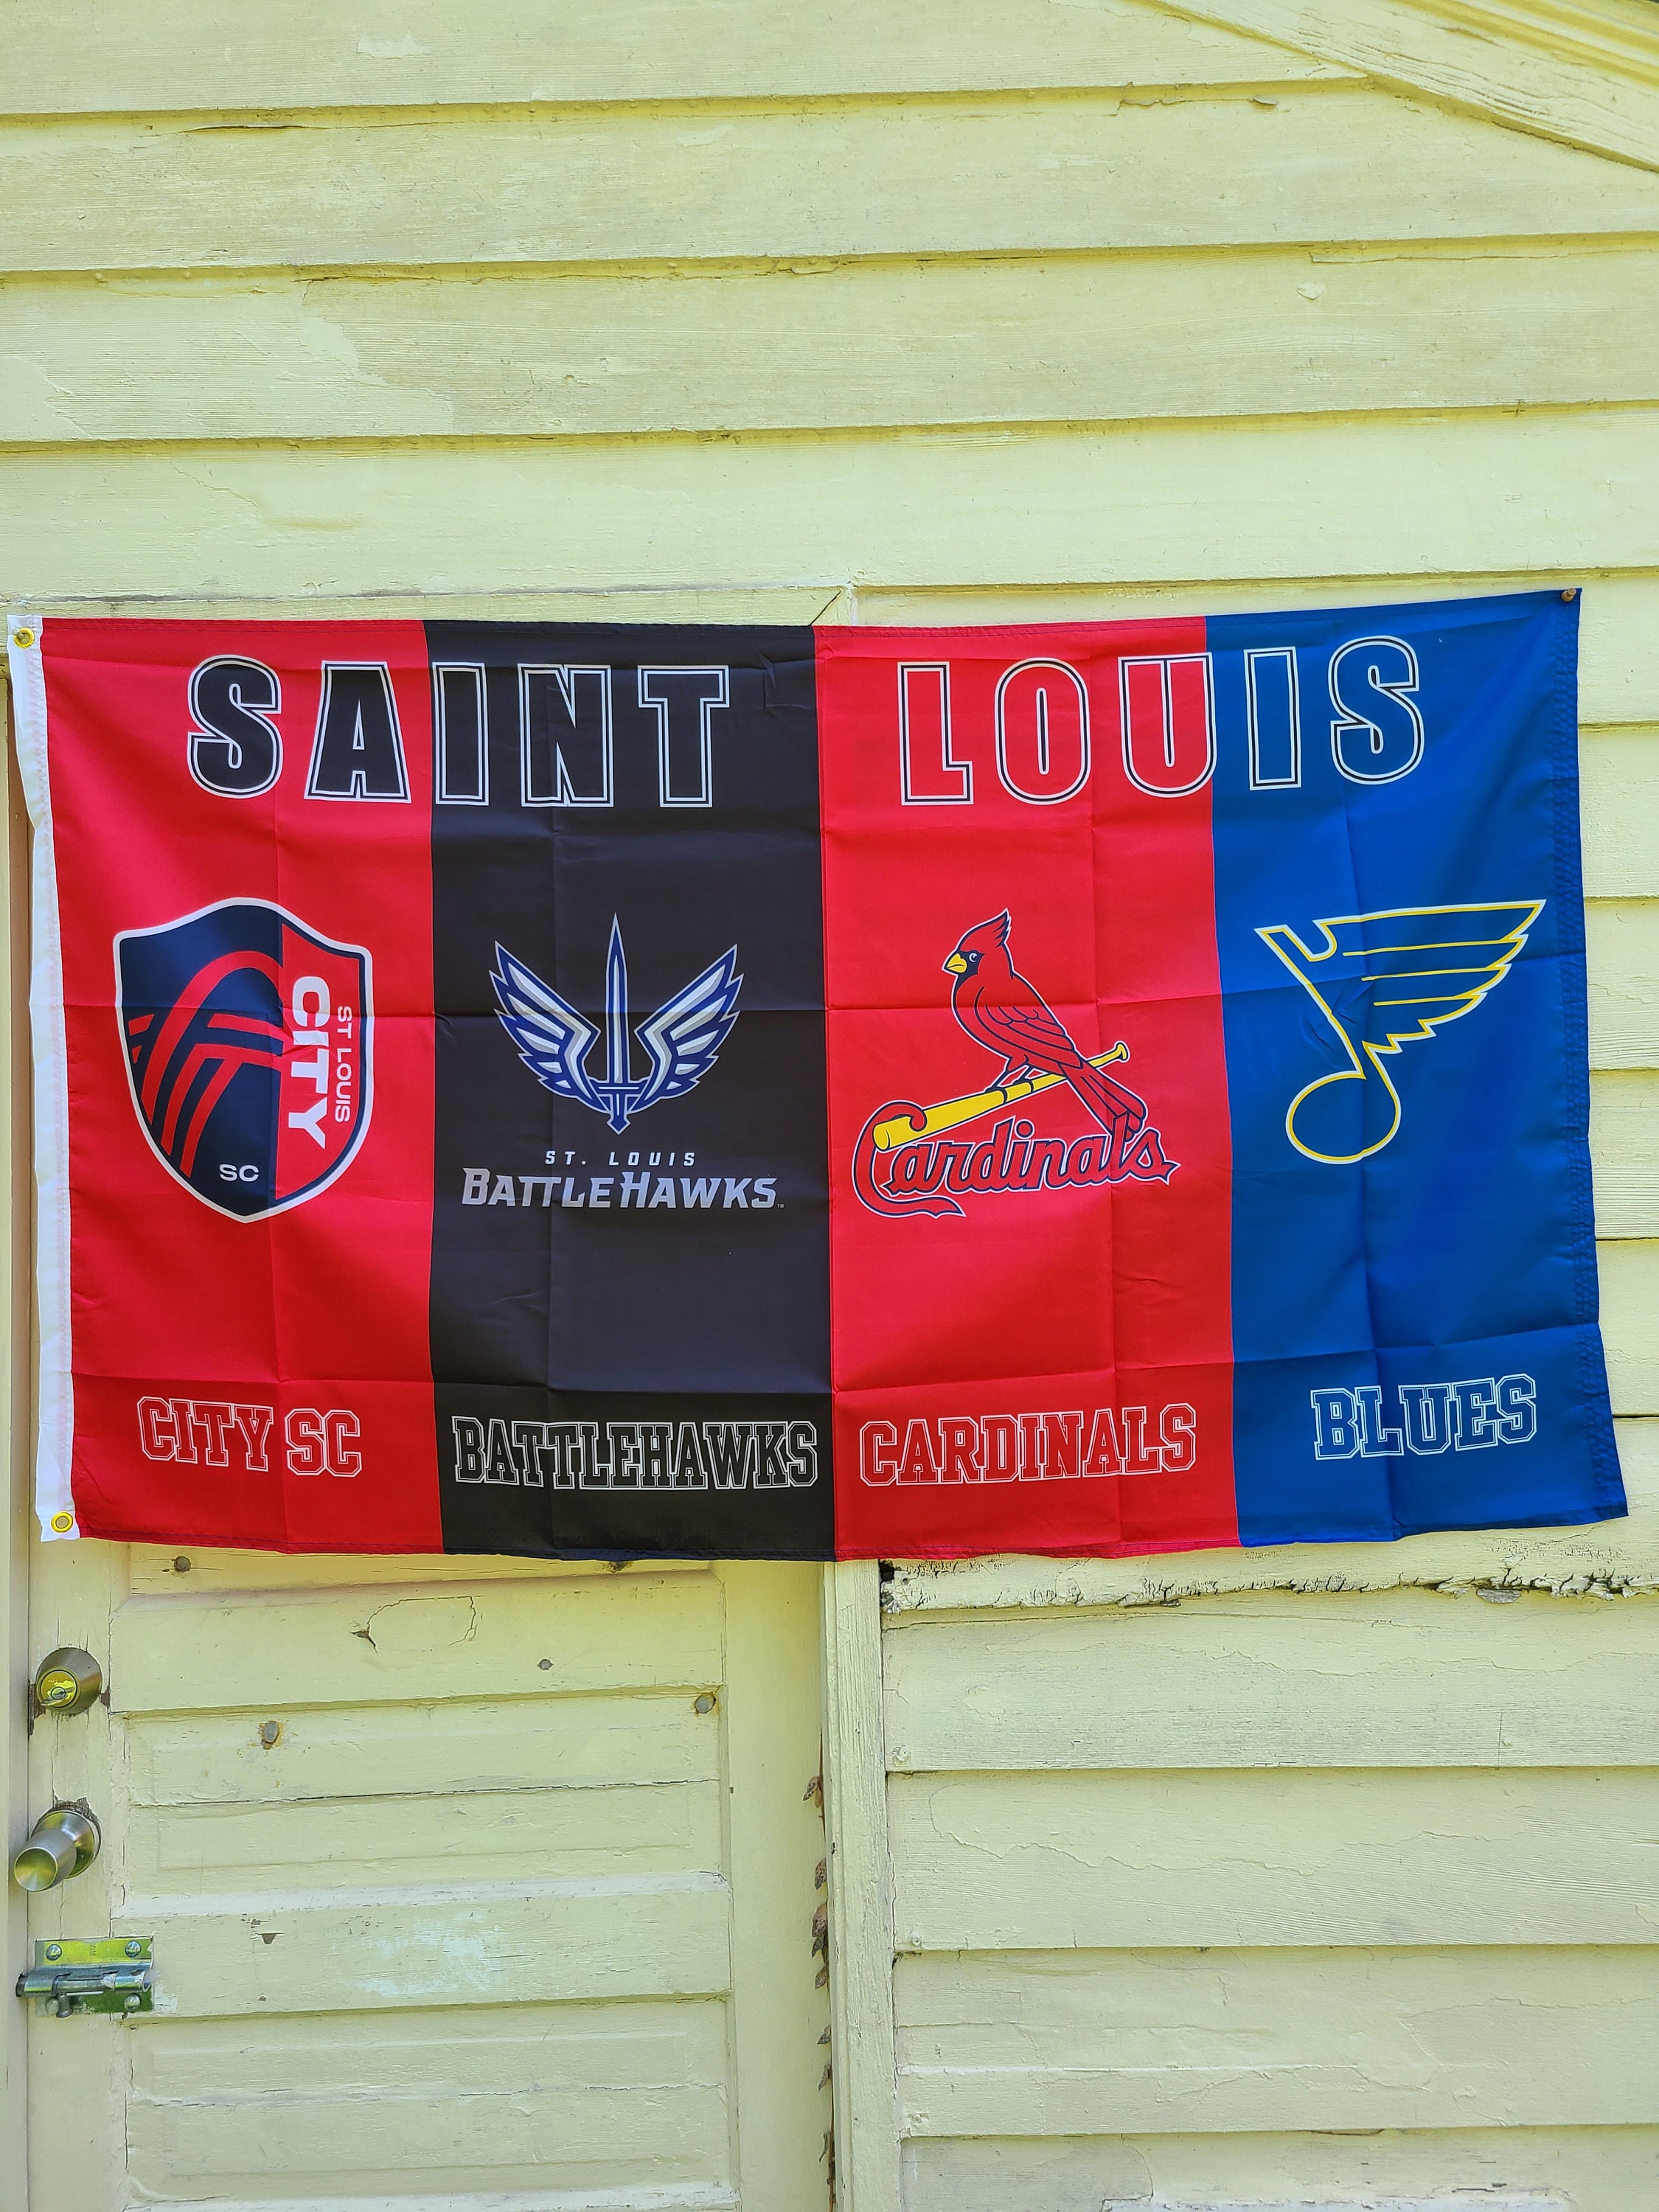 St Louis Blues Banner Garden Flag  St louis blues, Blue banner, Blues